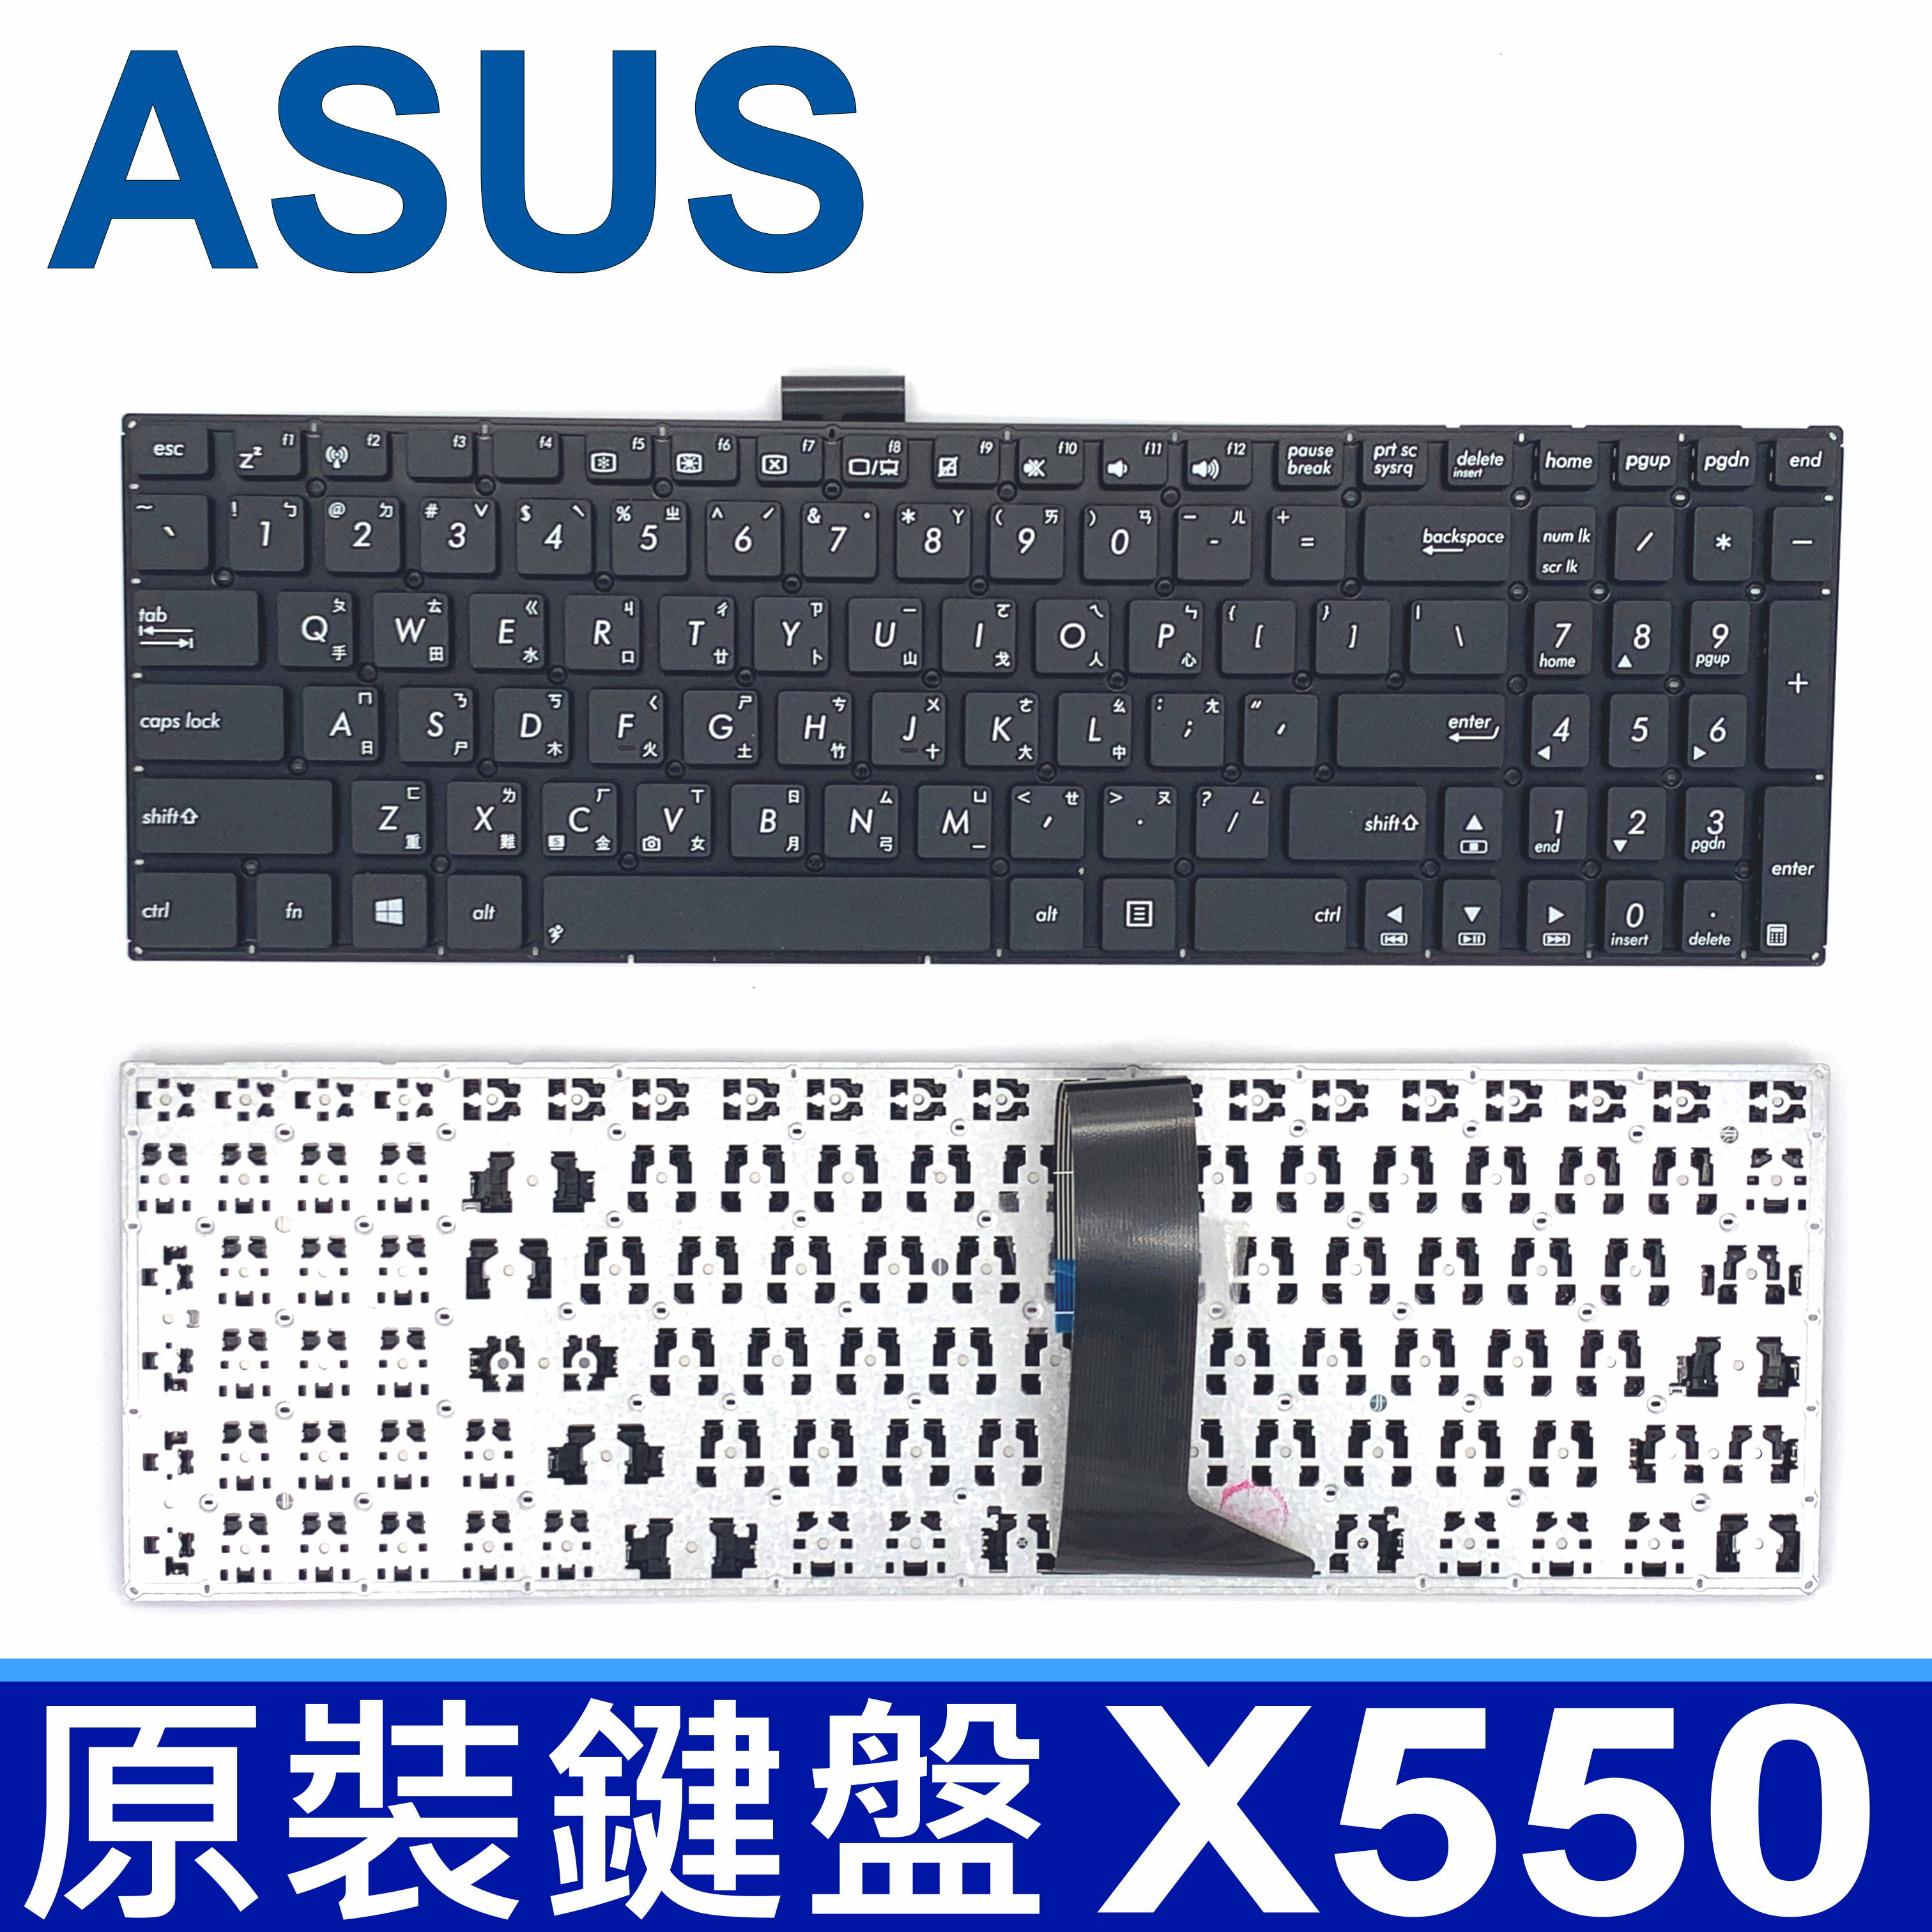 ASUS X550 全新 繁體中文 鍵盤 W518 X550C X550CA X550CC X550CL X550D X550JX X550LA X550LAV X550LB X550LC X550ZE K550 K550L K550J K550JK K550V D552 F550 W508 X552E X552EP X552M X552MD X552MJ X552V X750 X750JX X750JB X750JN